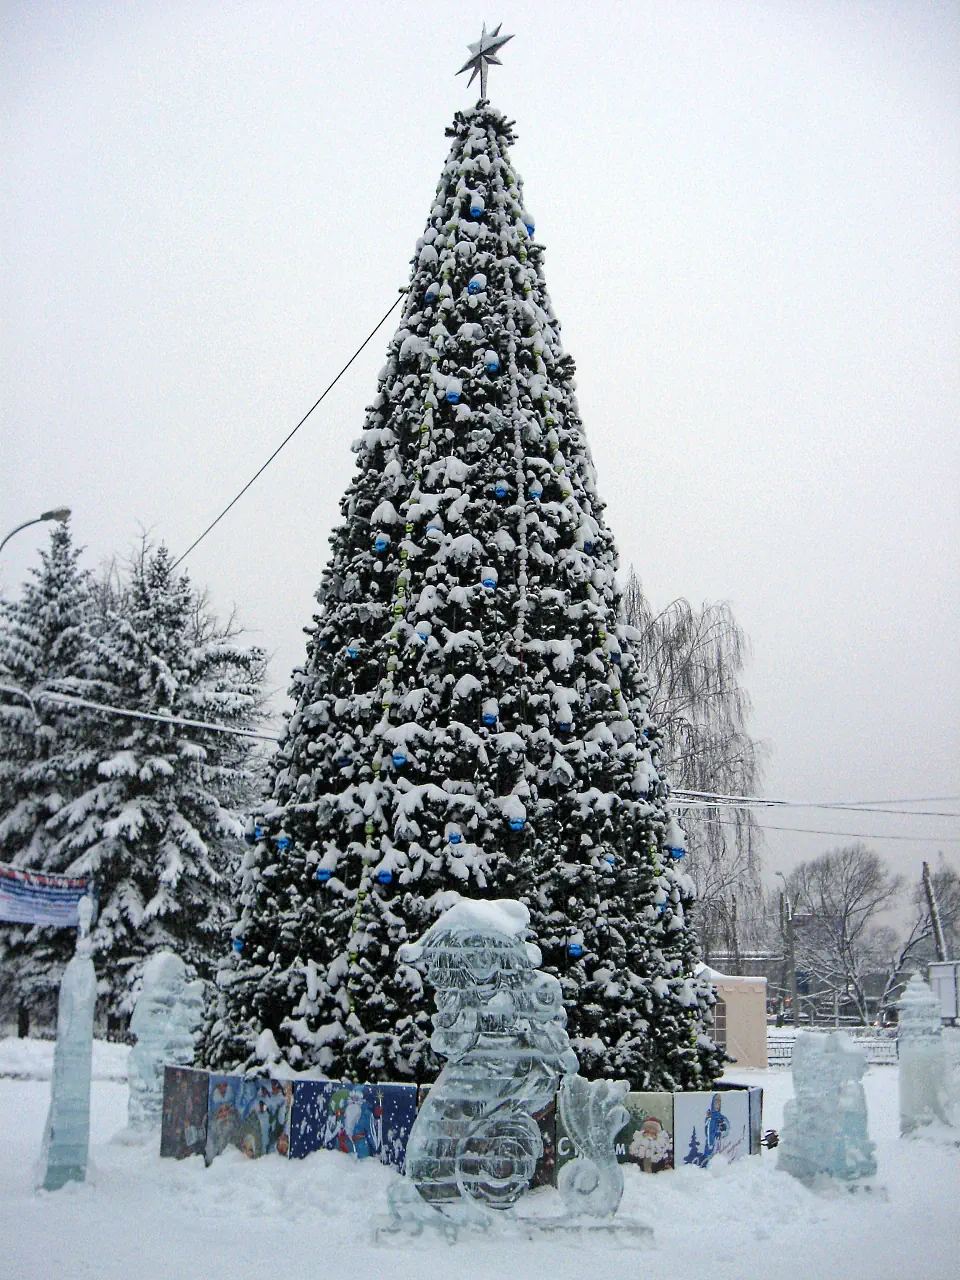 izmaylovsky park january 2012 1